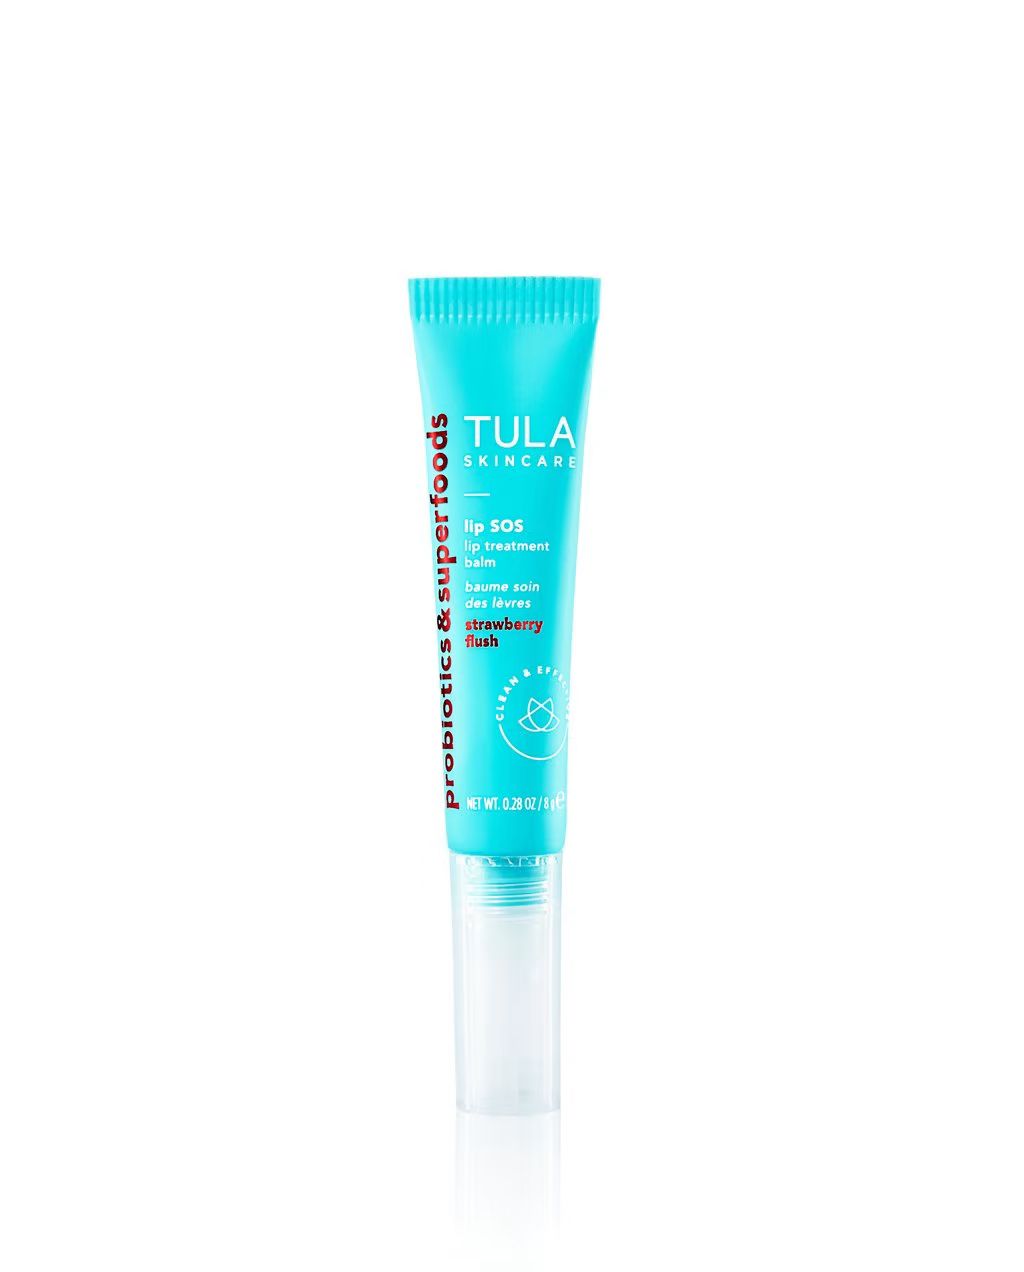 lip treatment balm | Tula Skincare